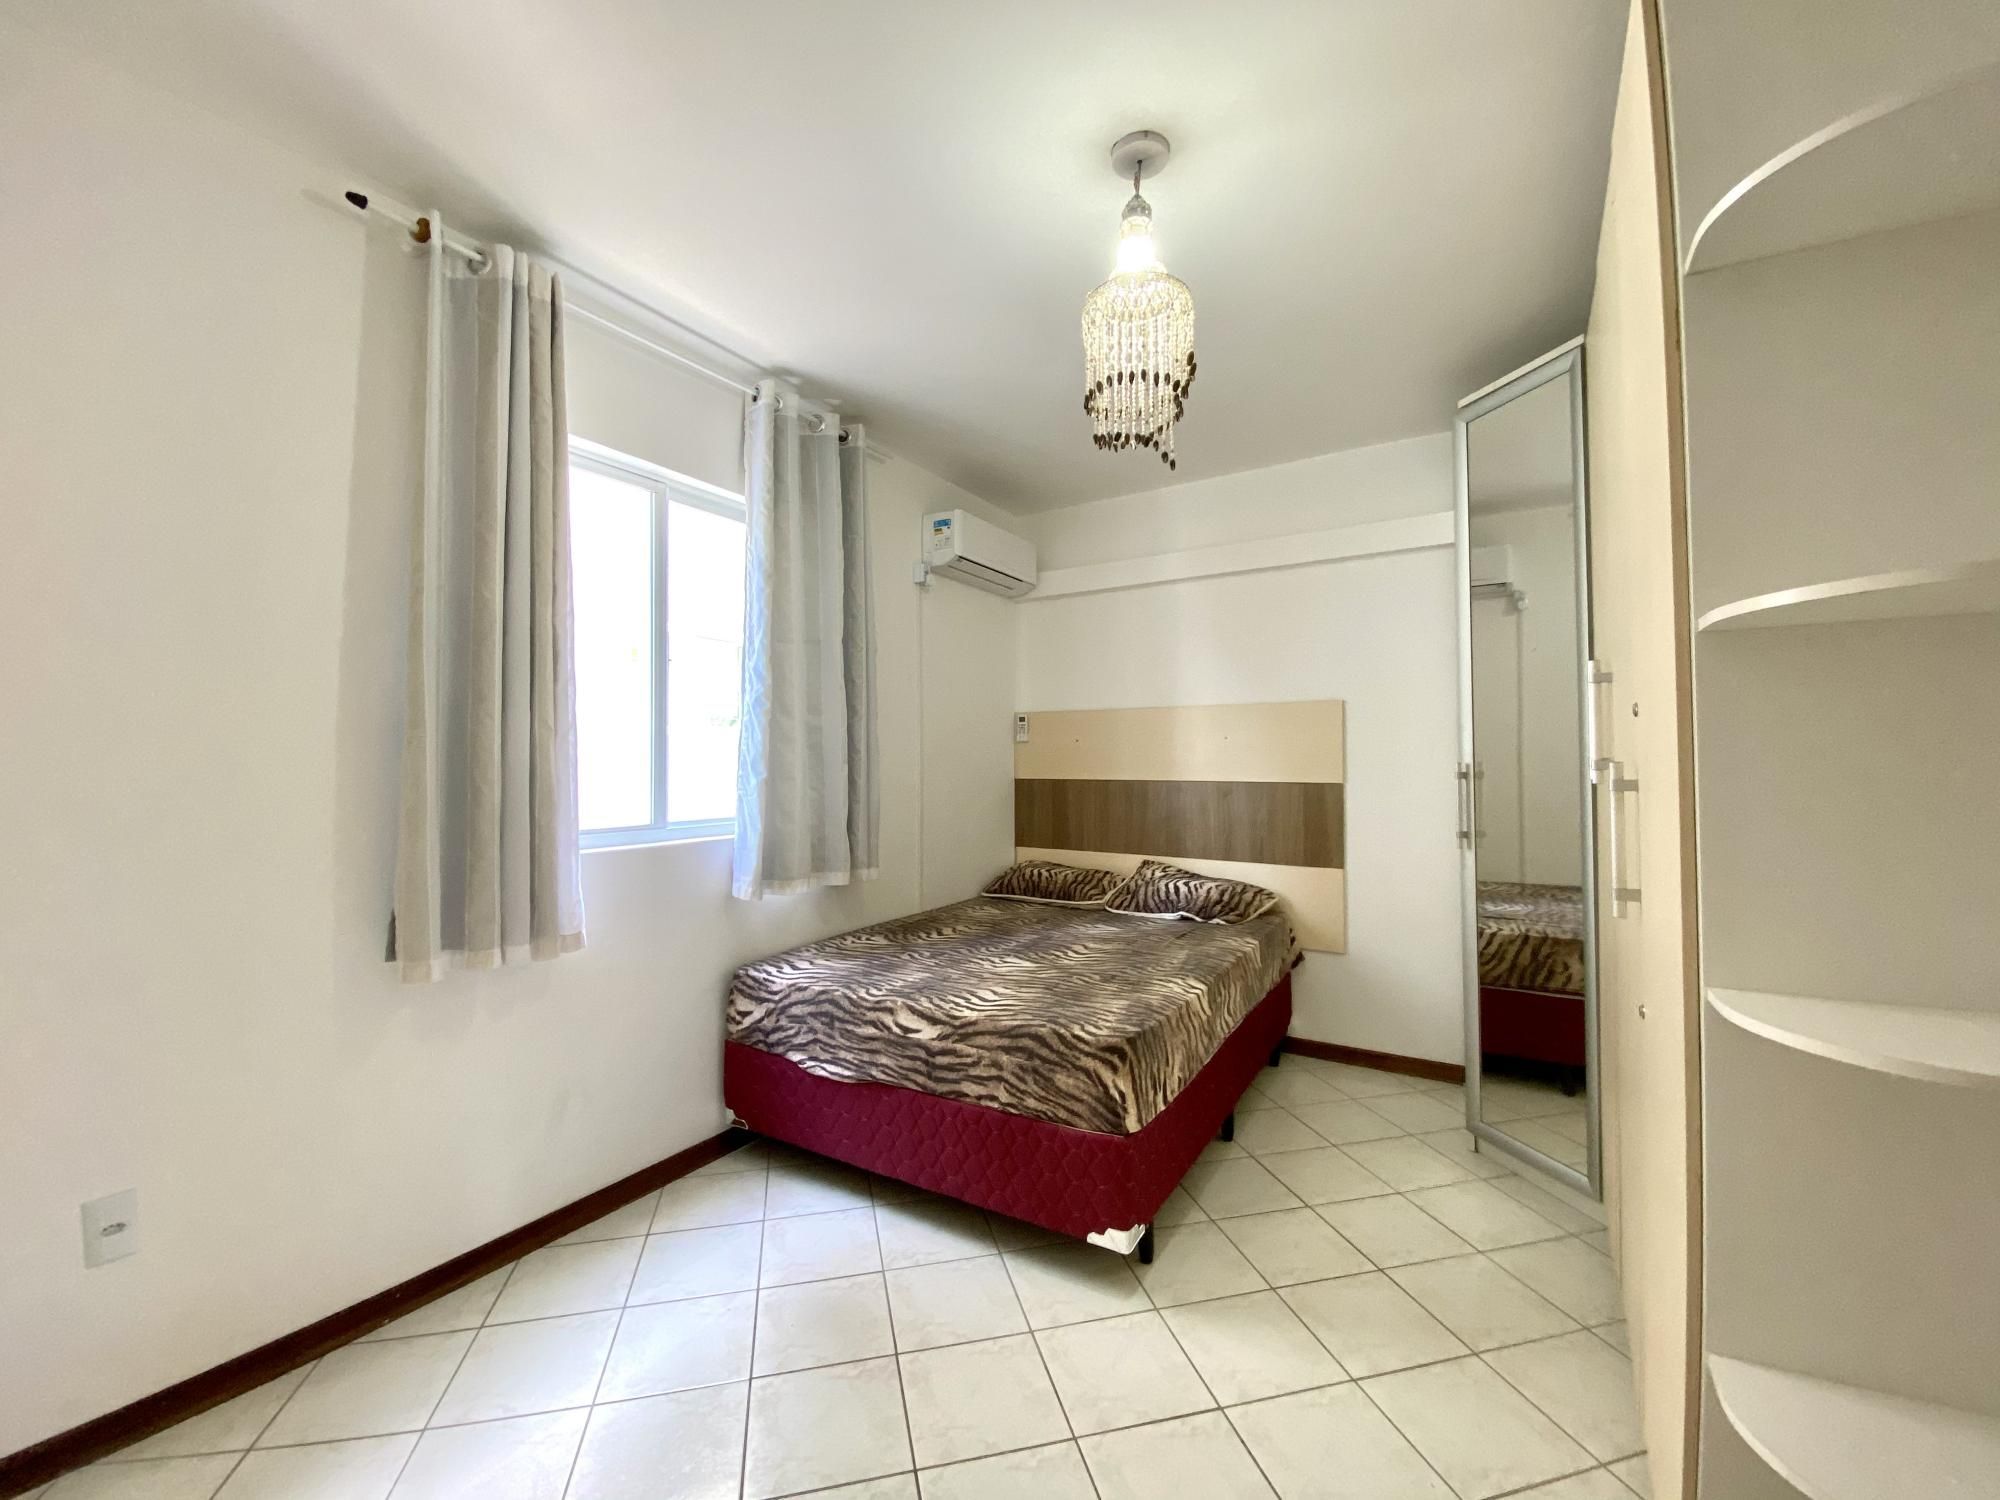 Apartamento com 3 Dormitórios para alugar, 95 m² valor à combinar